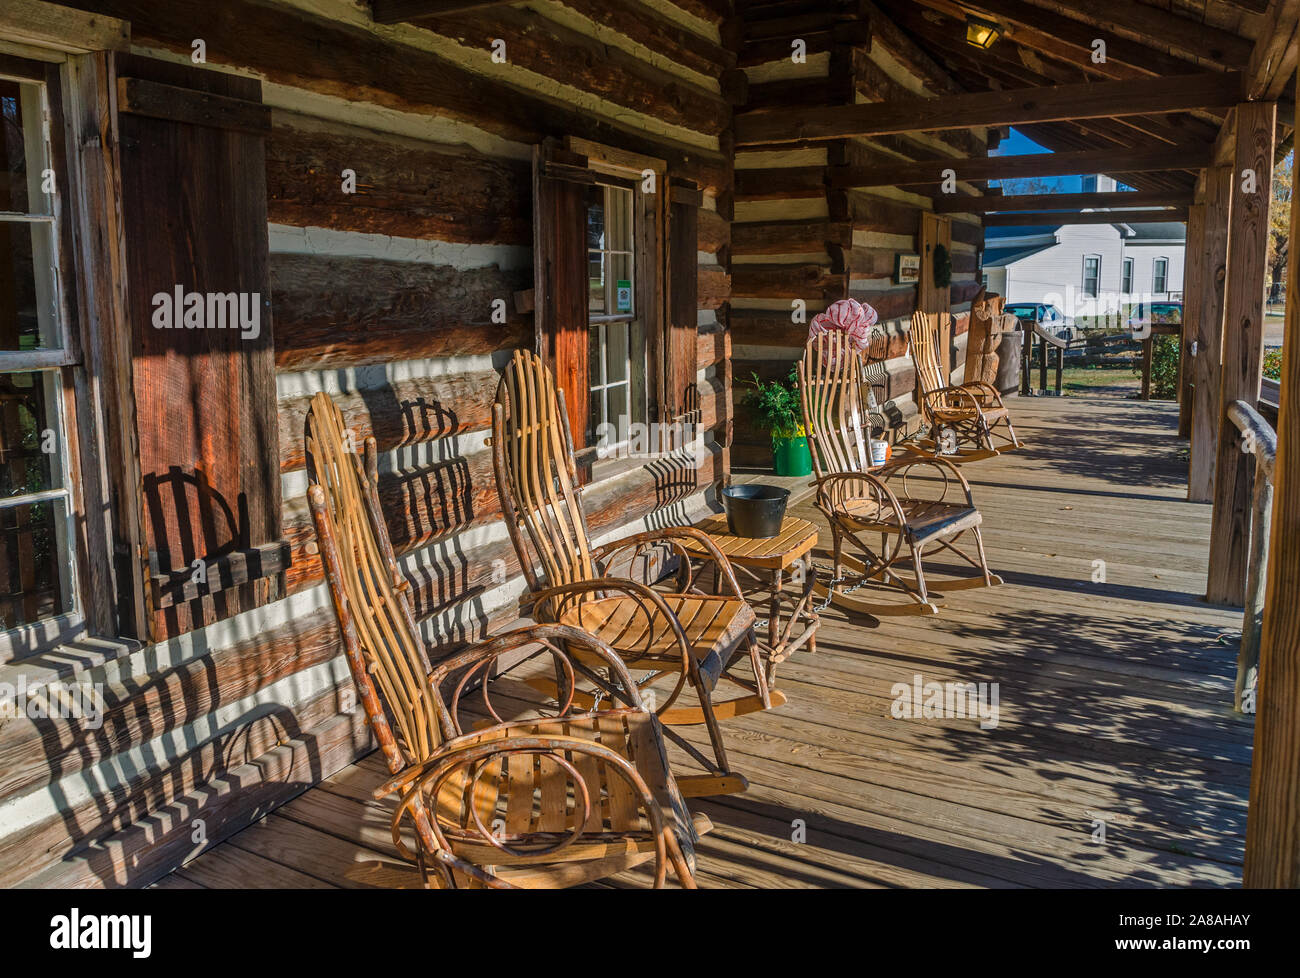 Amish - Wippen auf der Veranda der Hütte Geschenk Shop im französischen Lager, Mississippi sitzen. Stockfoto